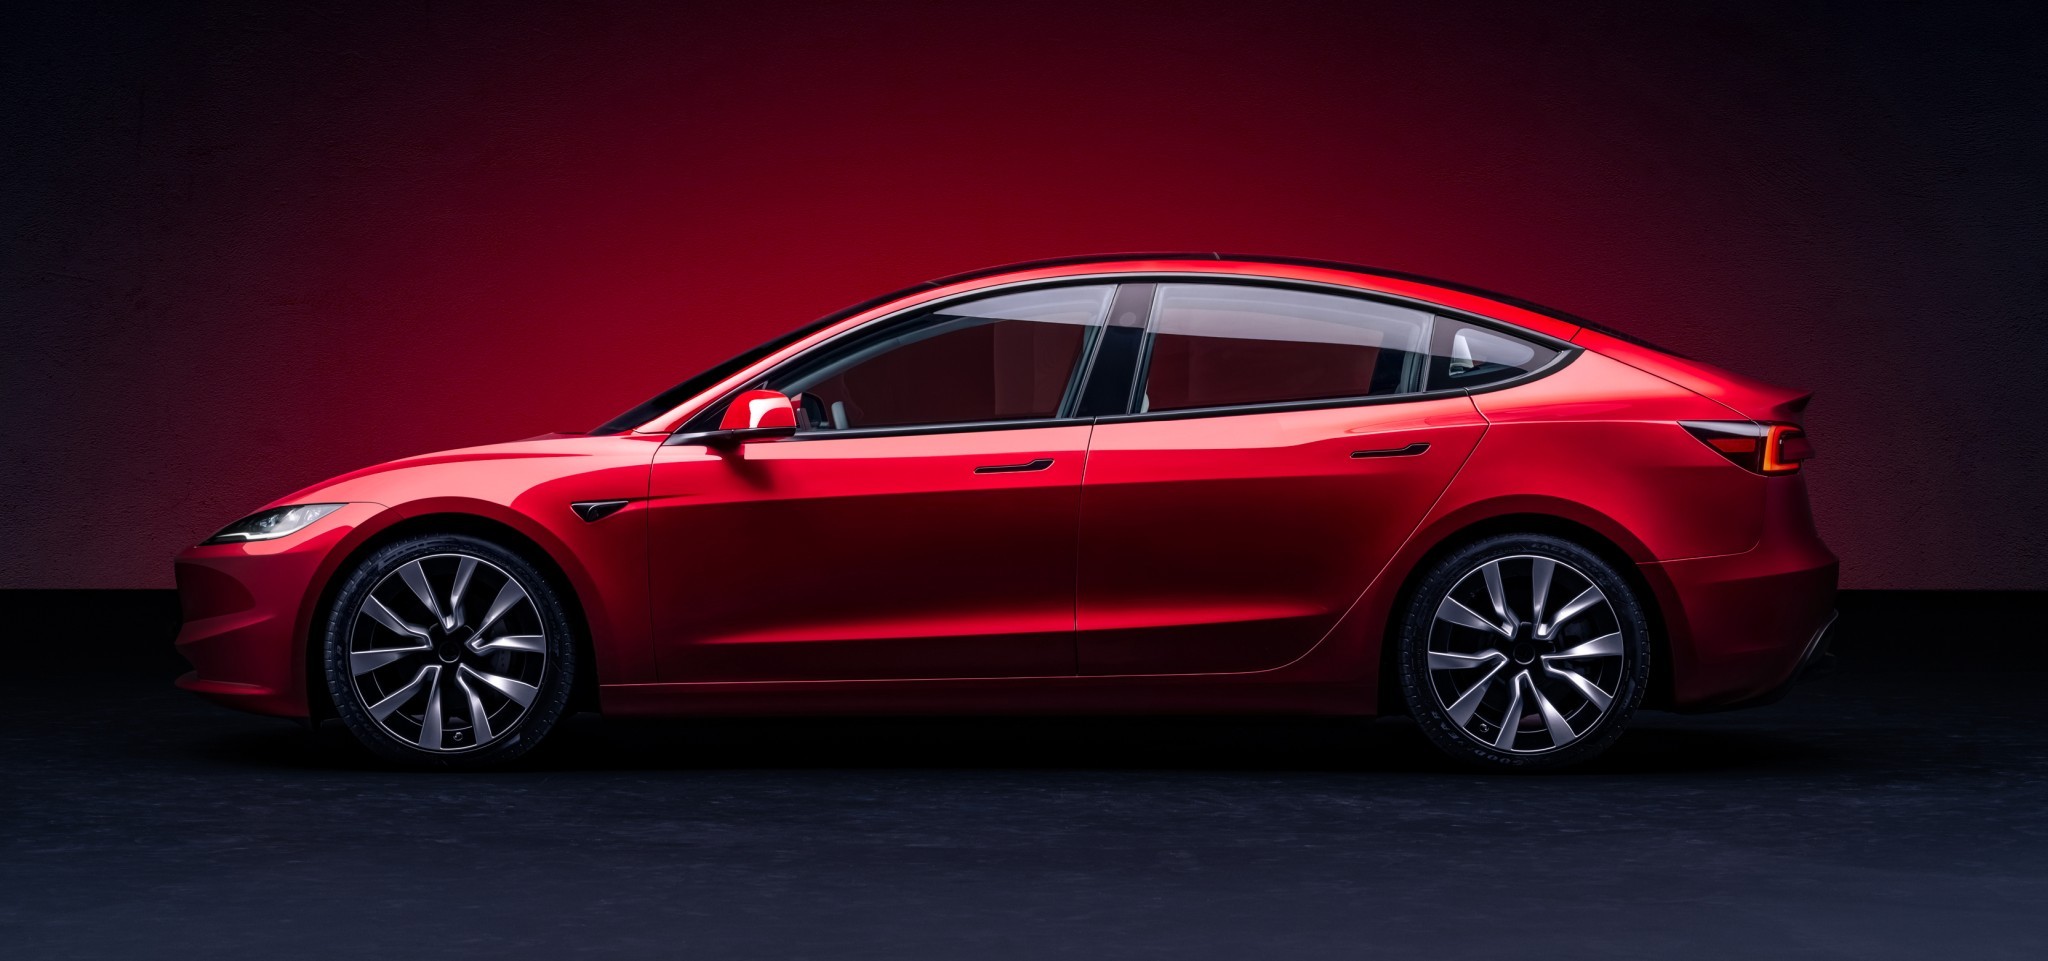 10 Changes That Make the Refreshed Tesla Model 3 a Vastly Improved